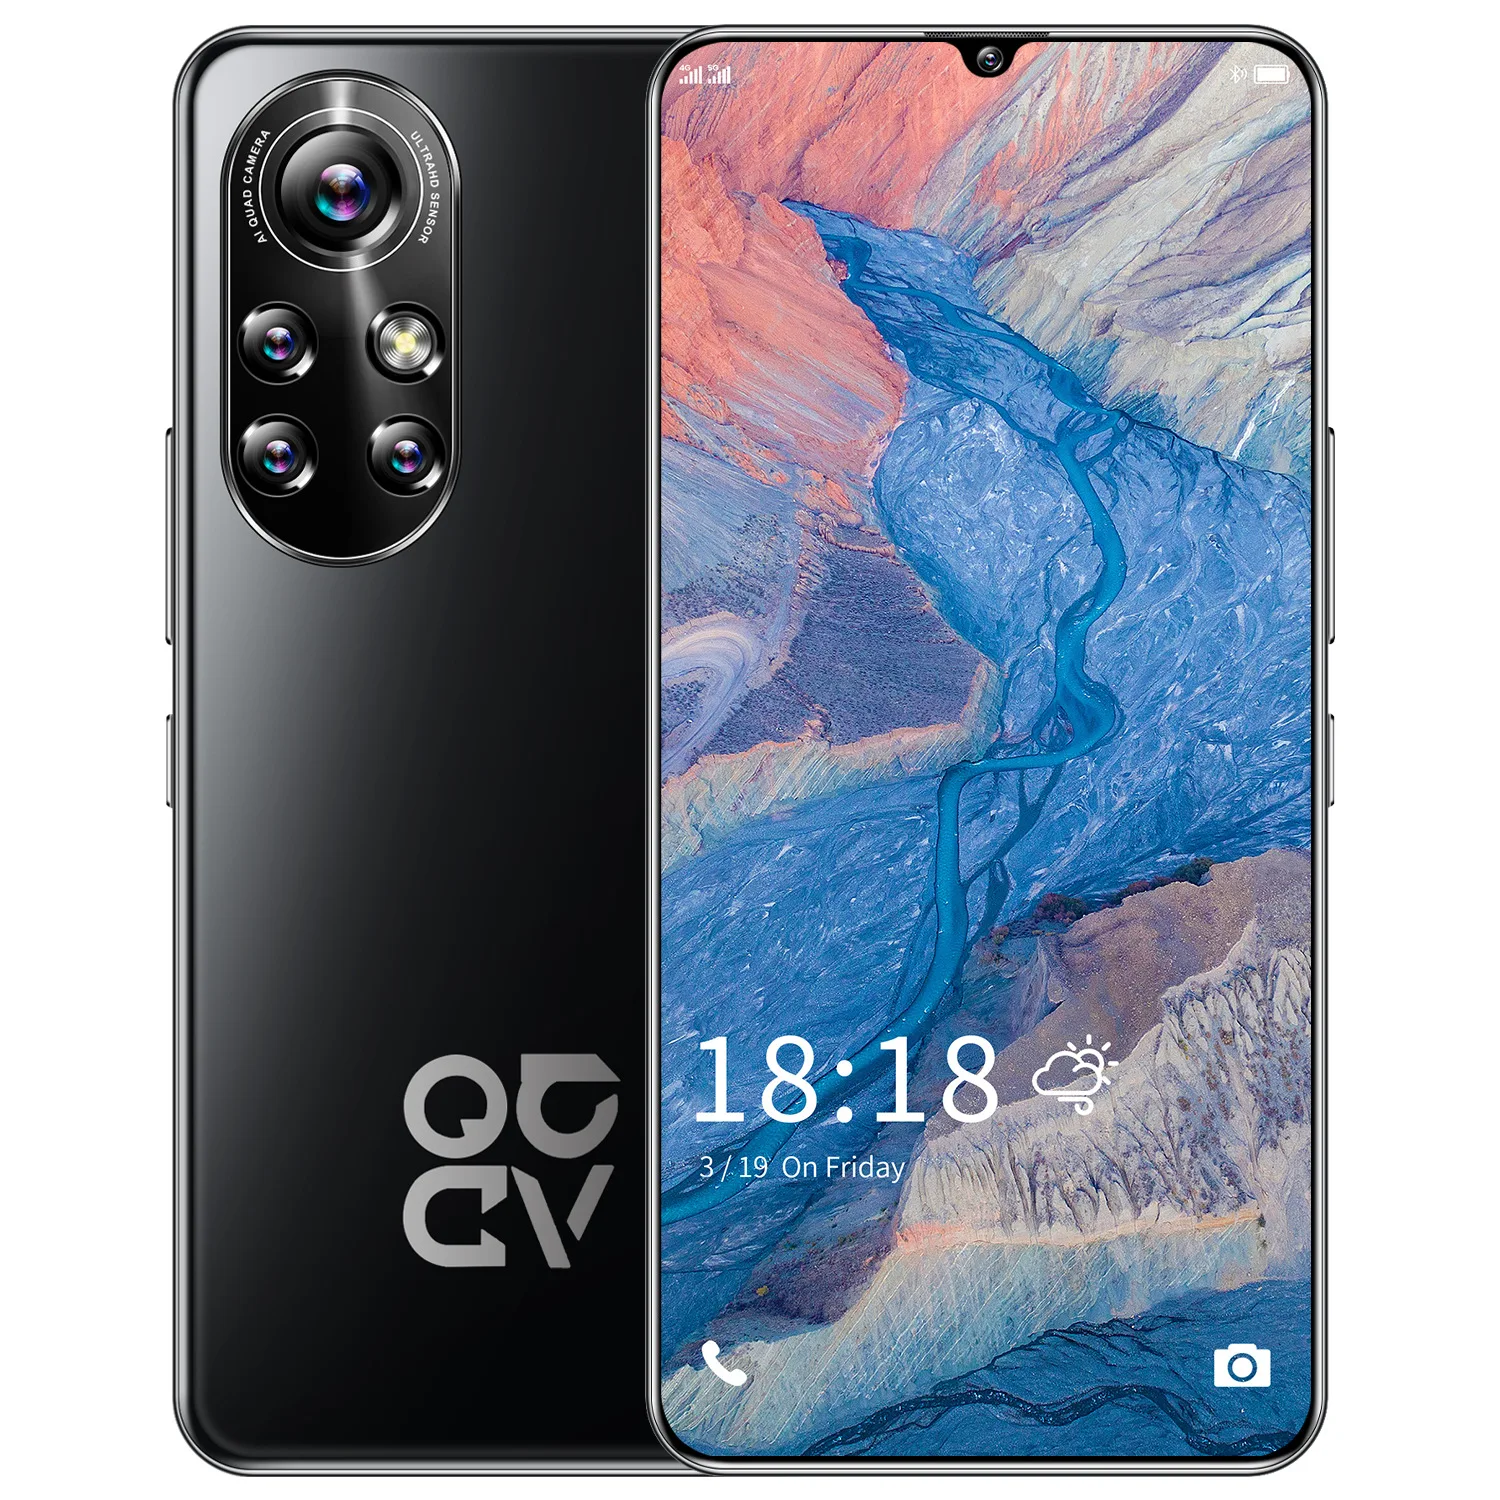 Новый дизайн 2021 смартфон Nova8 Pro умный игровой телефон 6 8 дюйма лидер продаж память 1